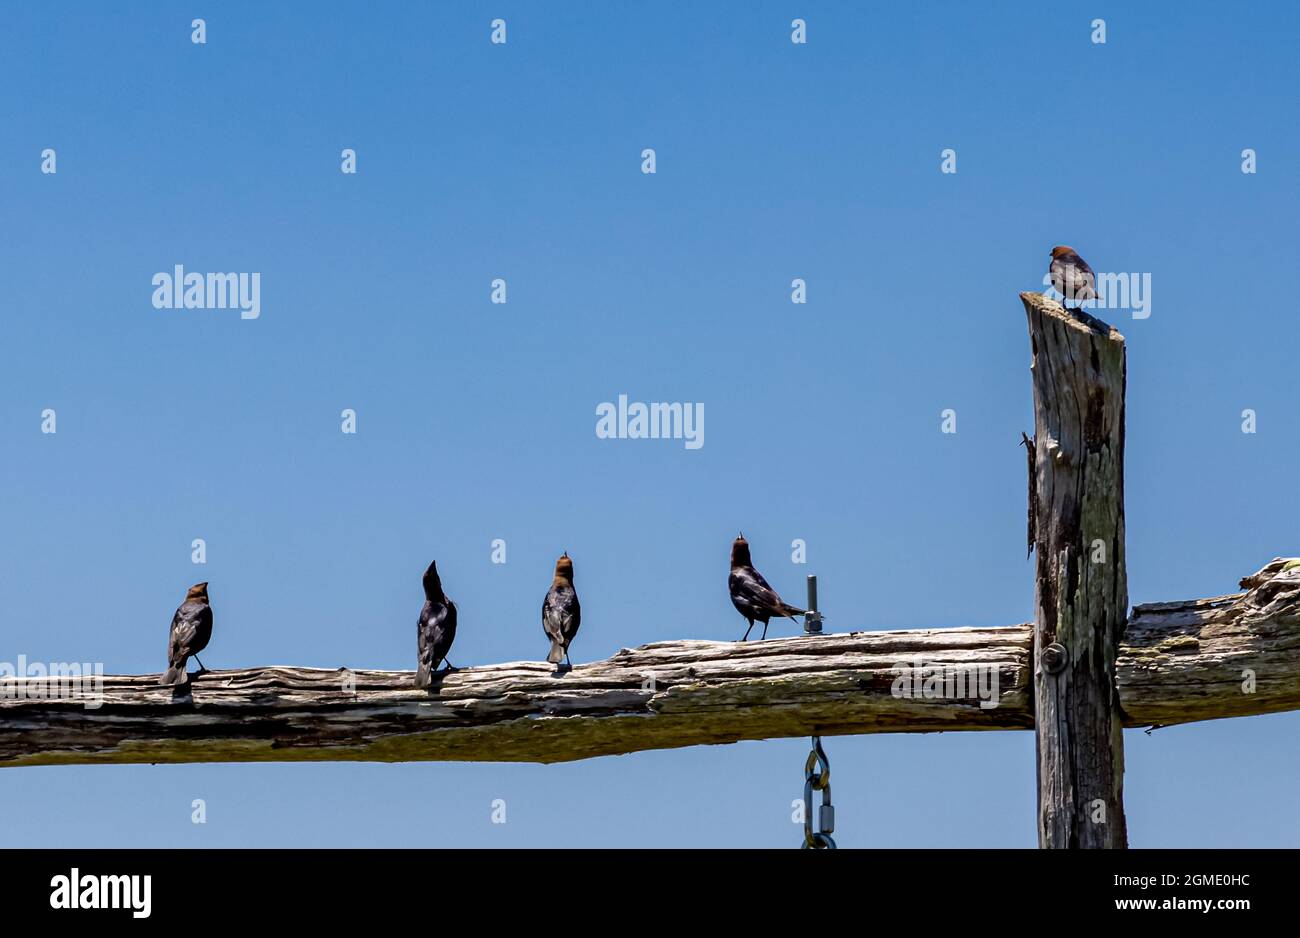 Cinq oiseaux sur une structure en bois avec un ciel bleu vif Banque D'Images